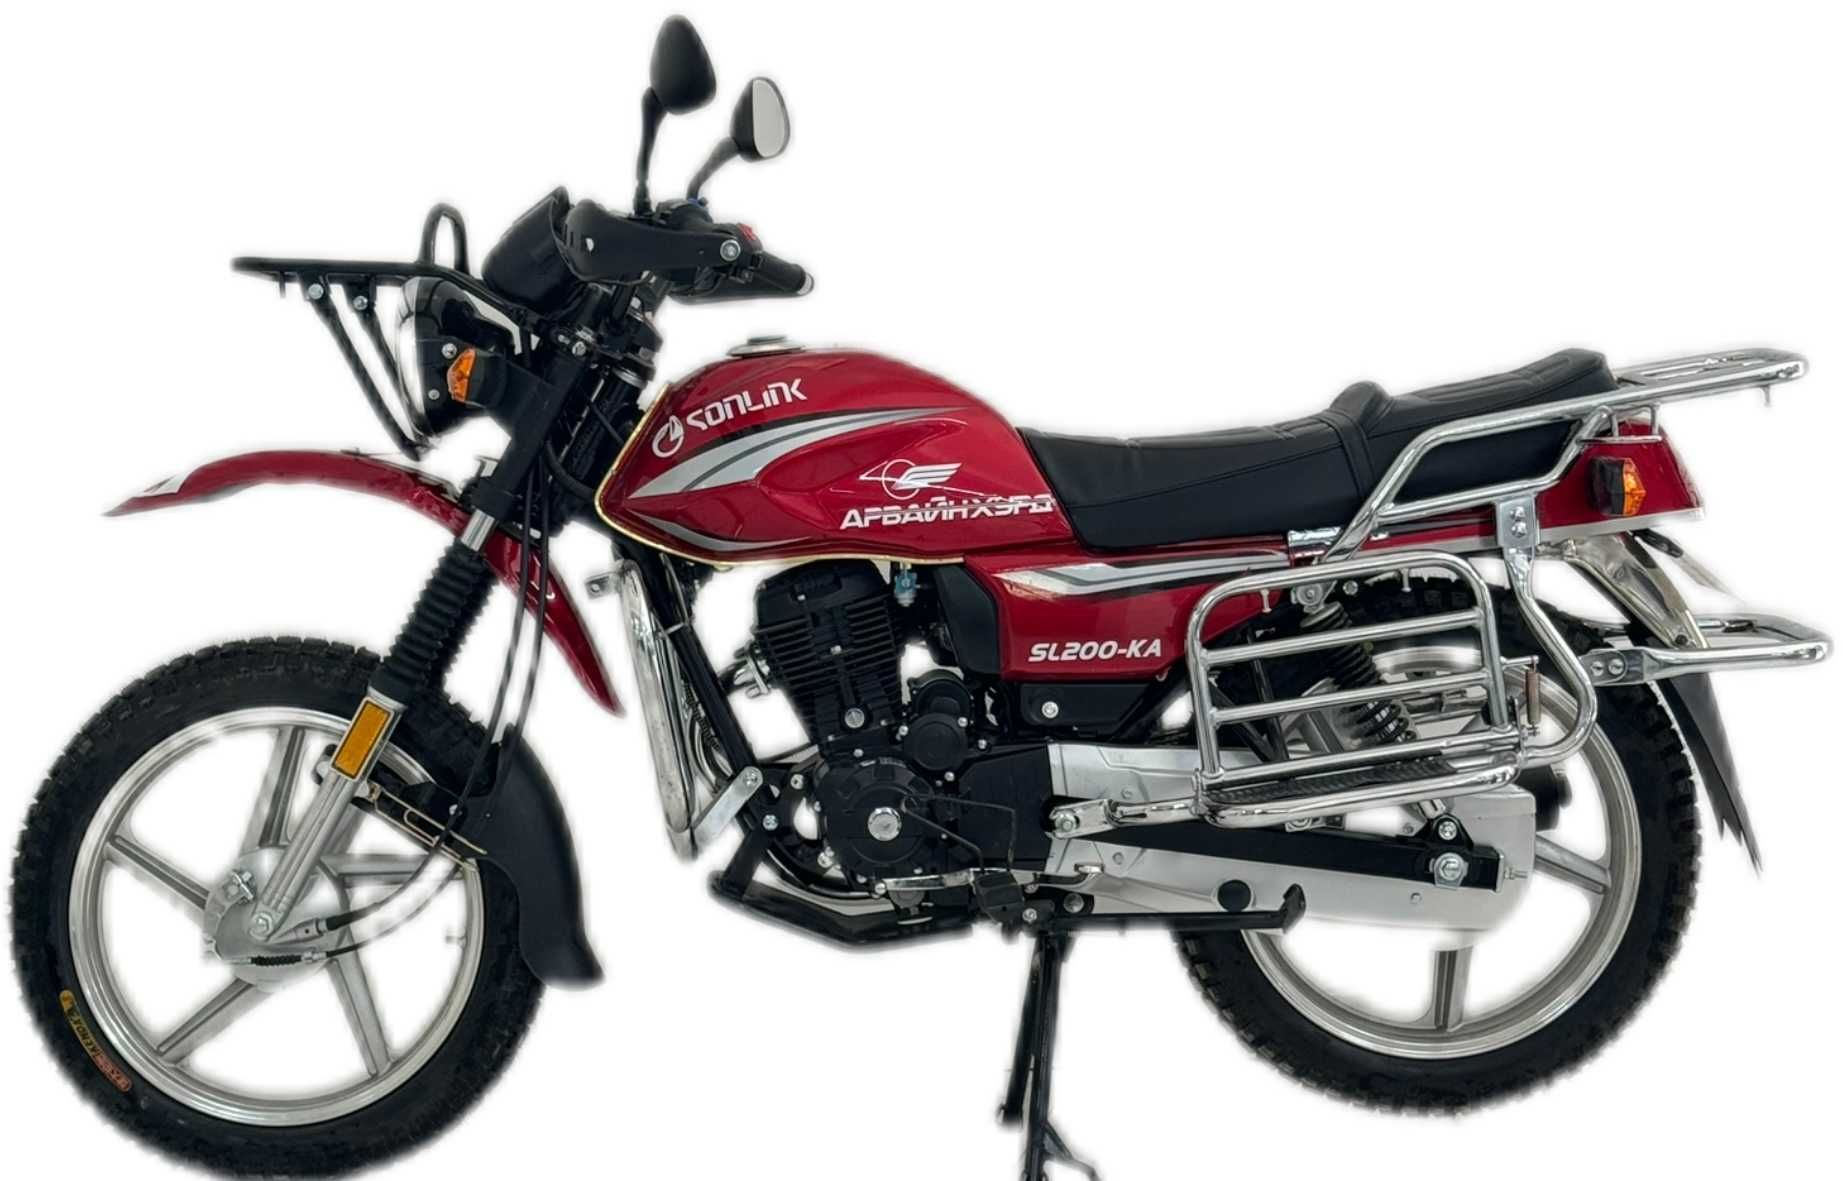 Мотоцикл Сонлинк 200 кубовый; Оригинал мотоцикл Sonlink 200 куб